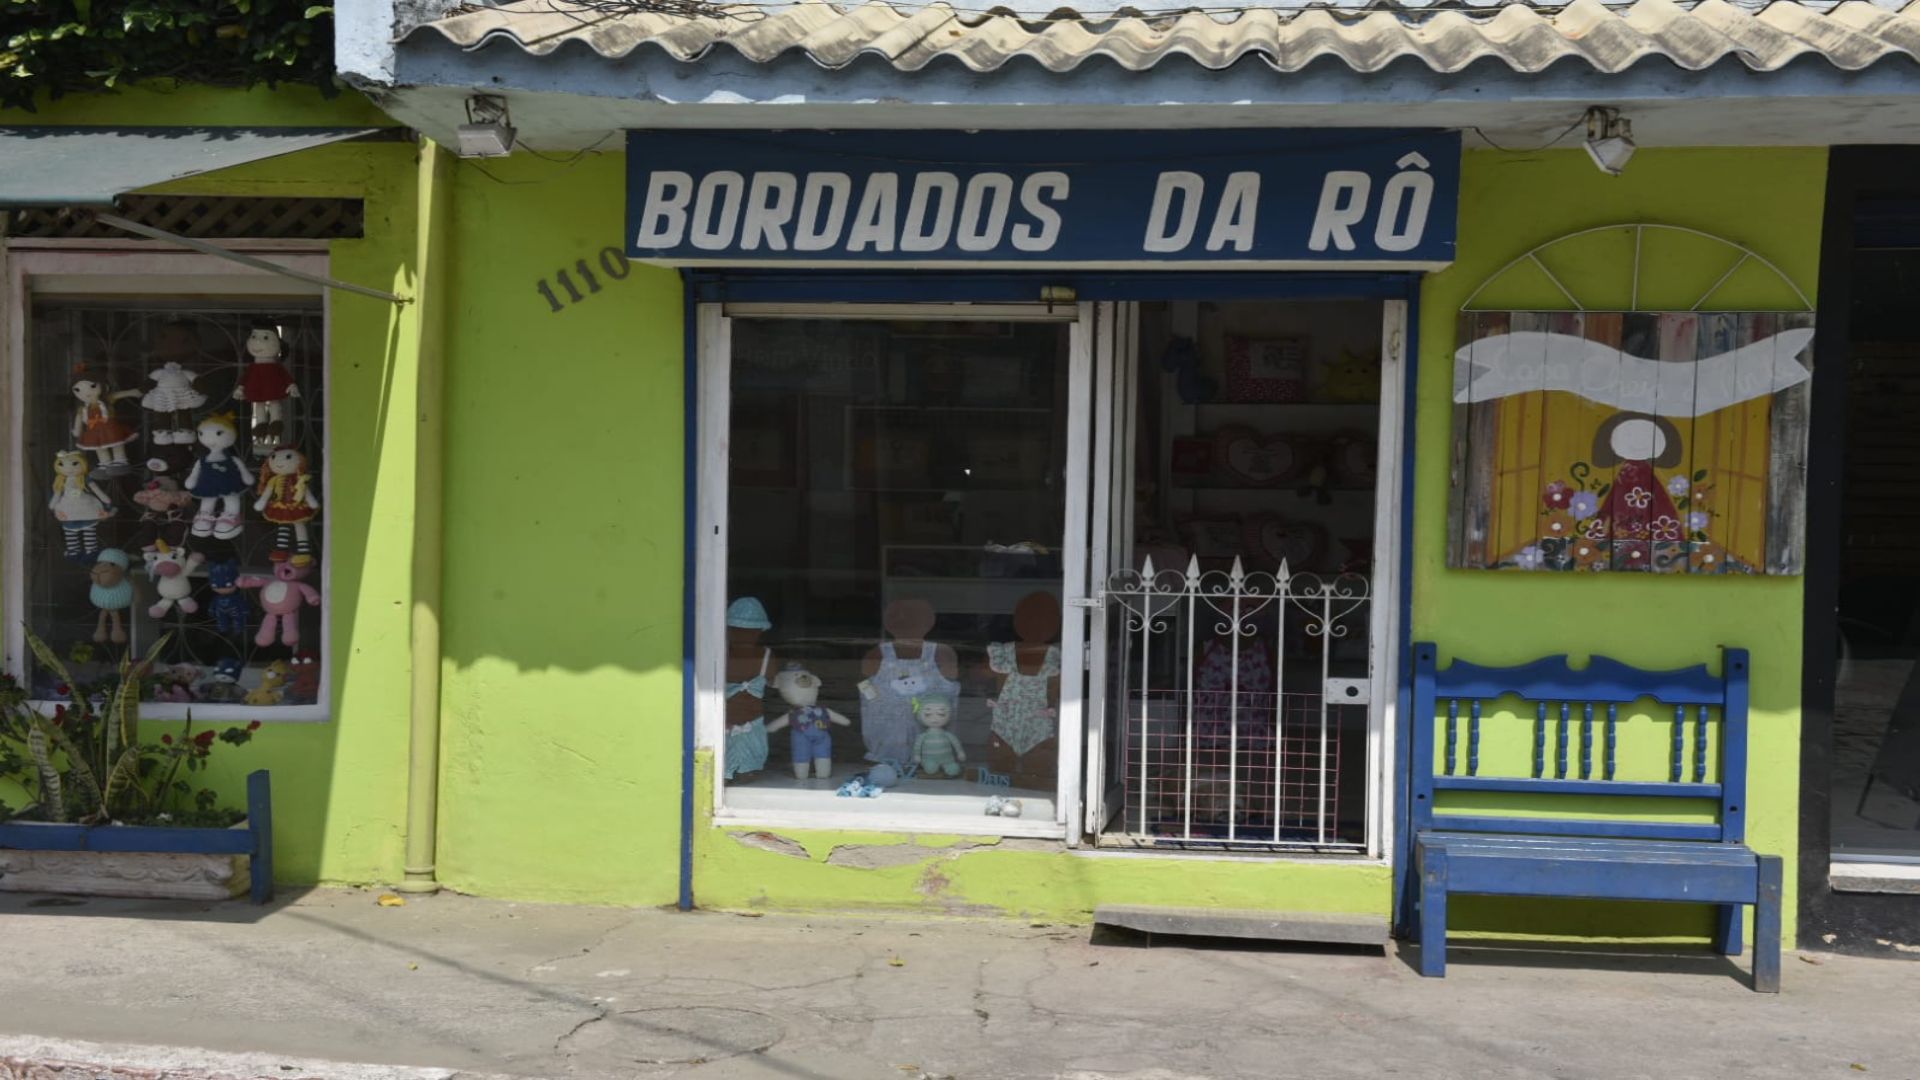 Fotos mostram muros, placas e outras estruturas cobertas por artes coloridas com referências da região da Barra do Jucu, em Vila Velha